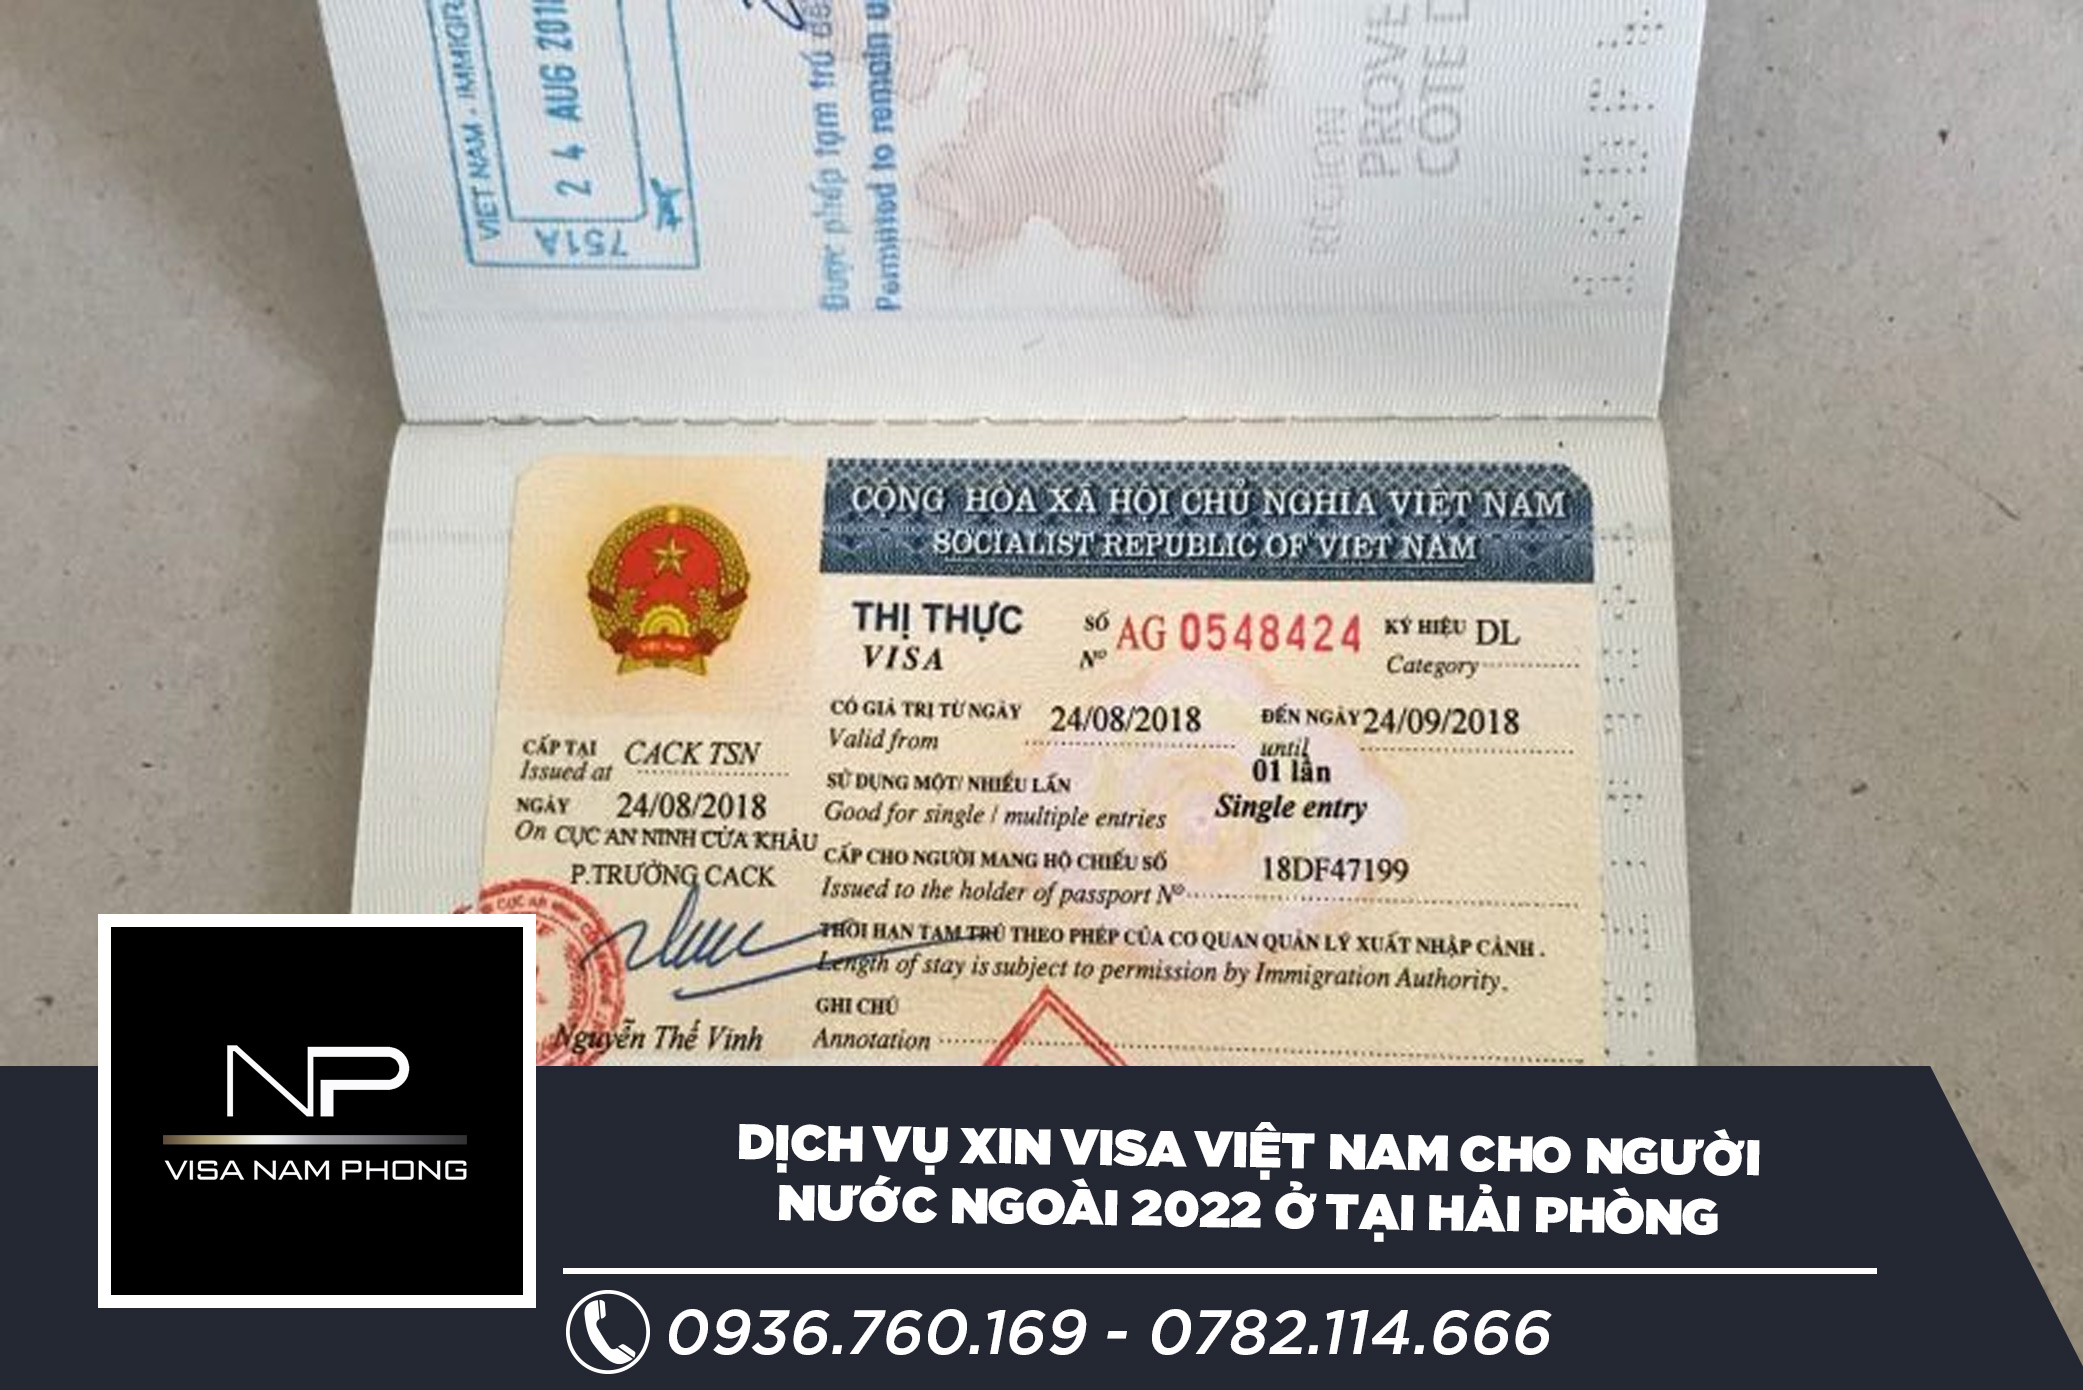 Dịch vụ xin visa Việt Nam cho người nước ngoài 2022 ở tại Hải Phòng